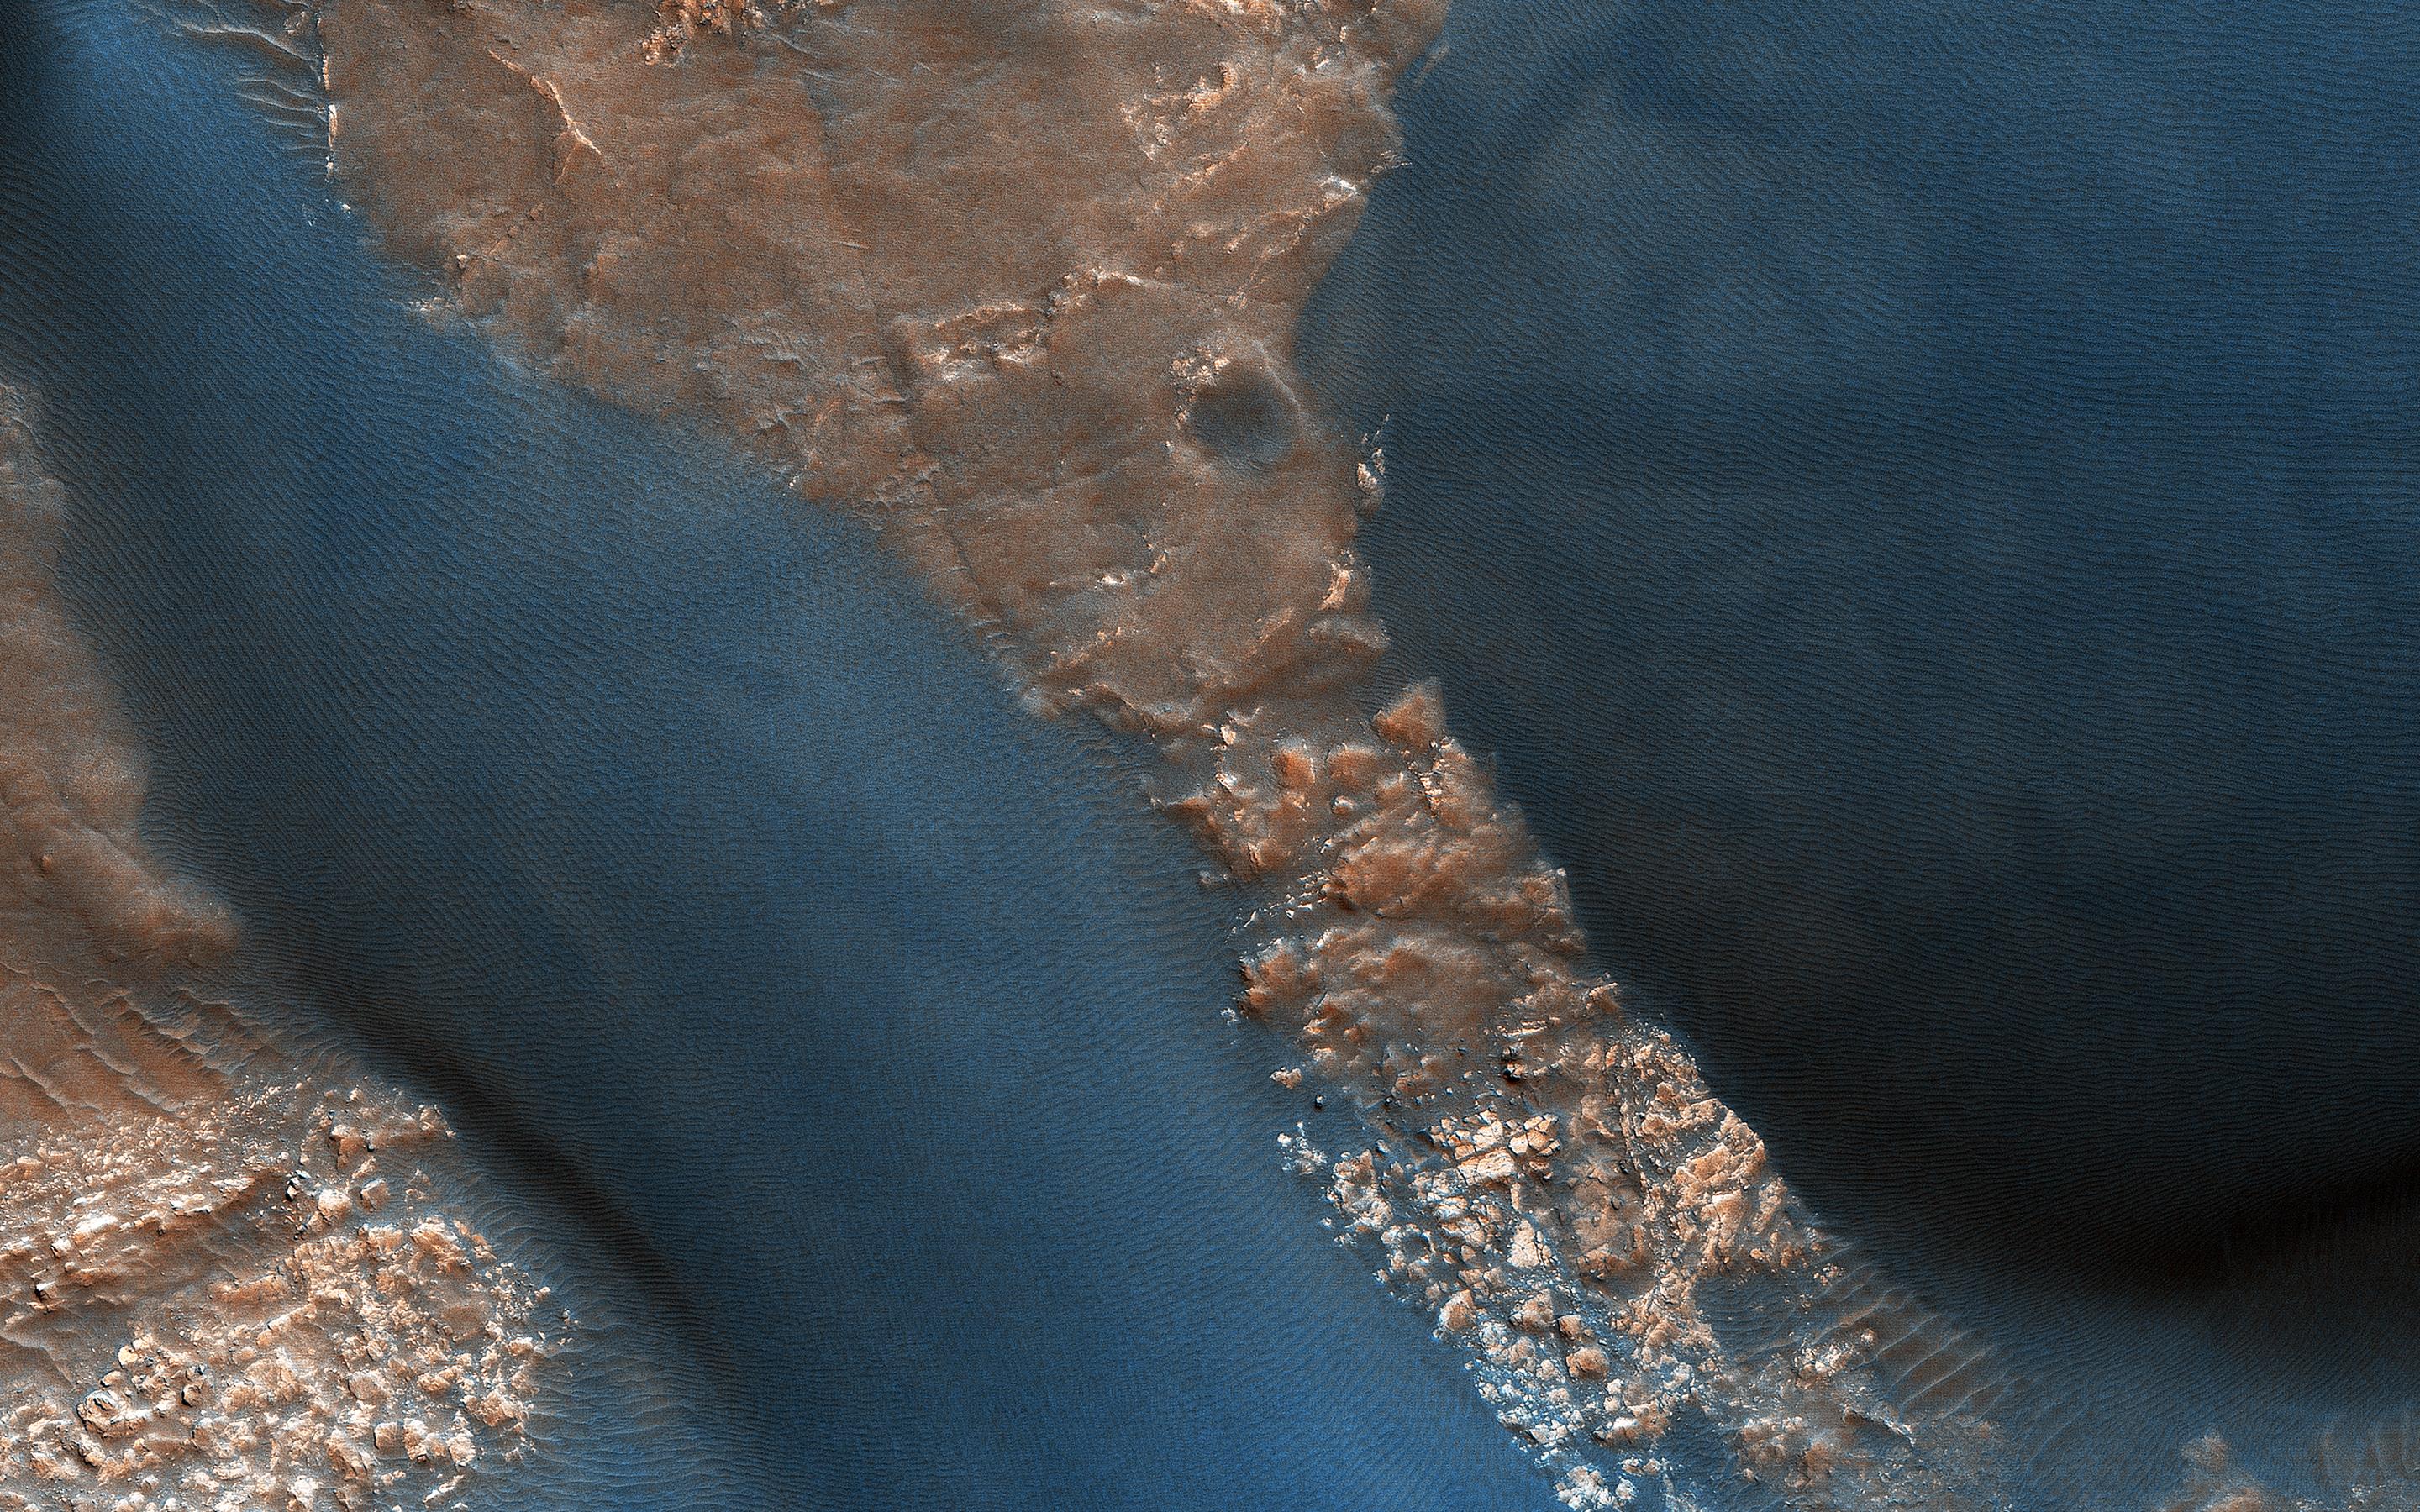 PIA22869: Active Dunes in Wirtz Crater